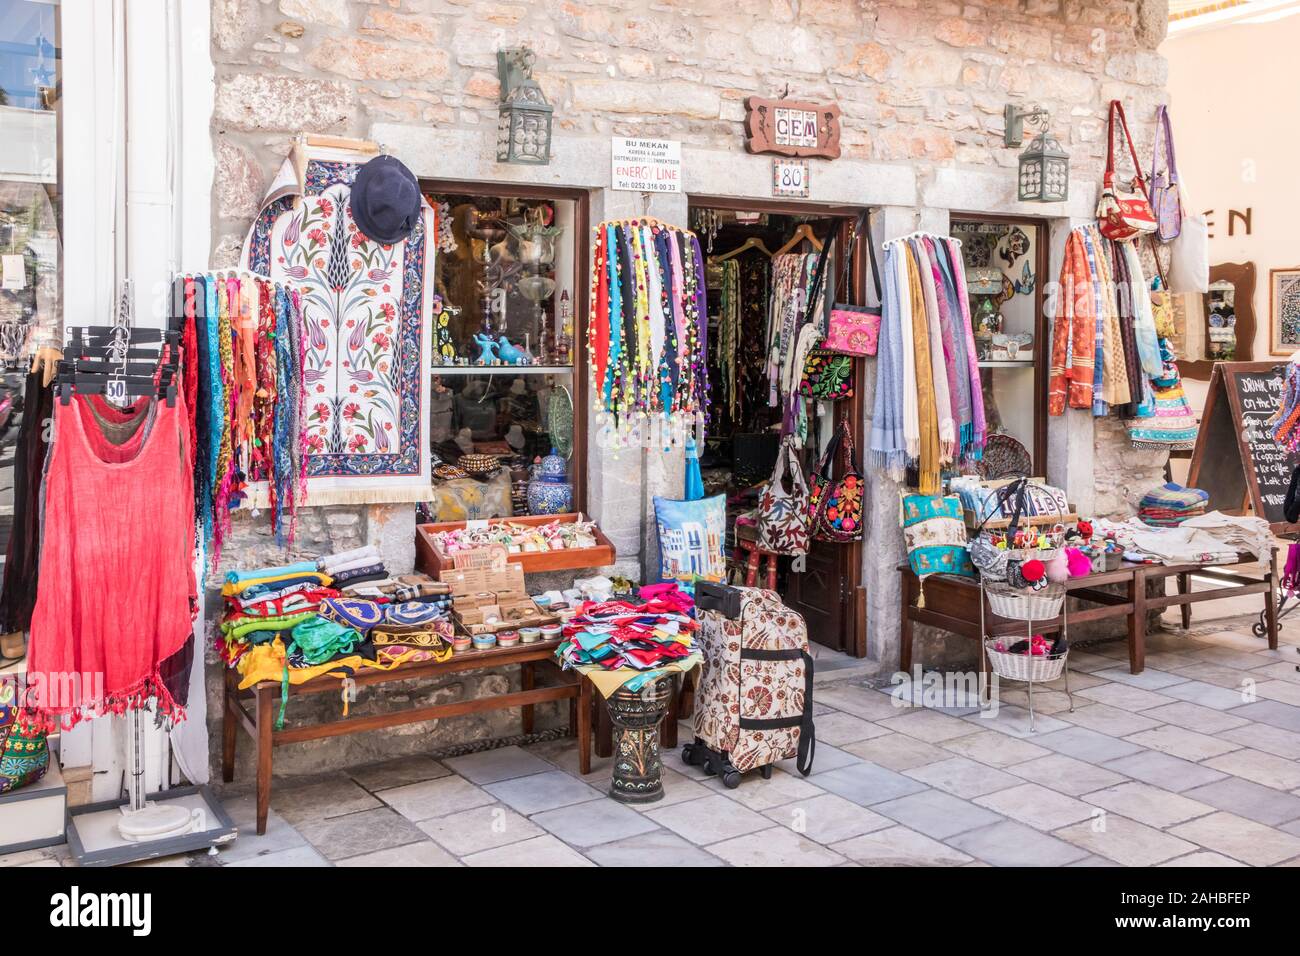 Bodrum, Turchia - 22 Settembre 2019: Negozio di souvenir e un negozio di abbigliamento in zona turistica. La città è una popolare destinazione turistica. Foto Stock